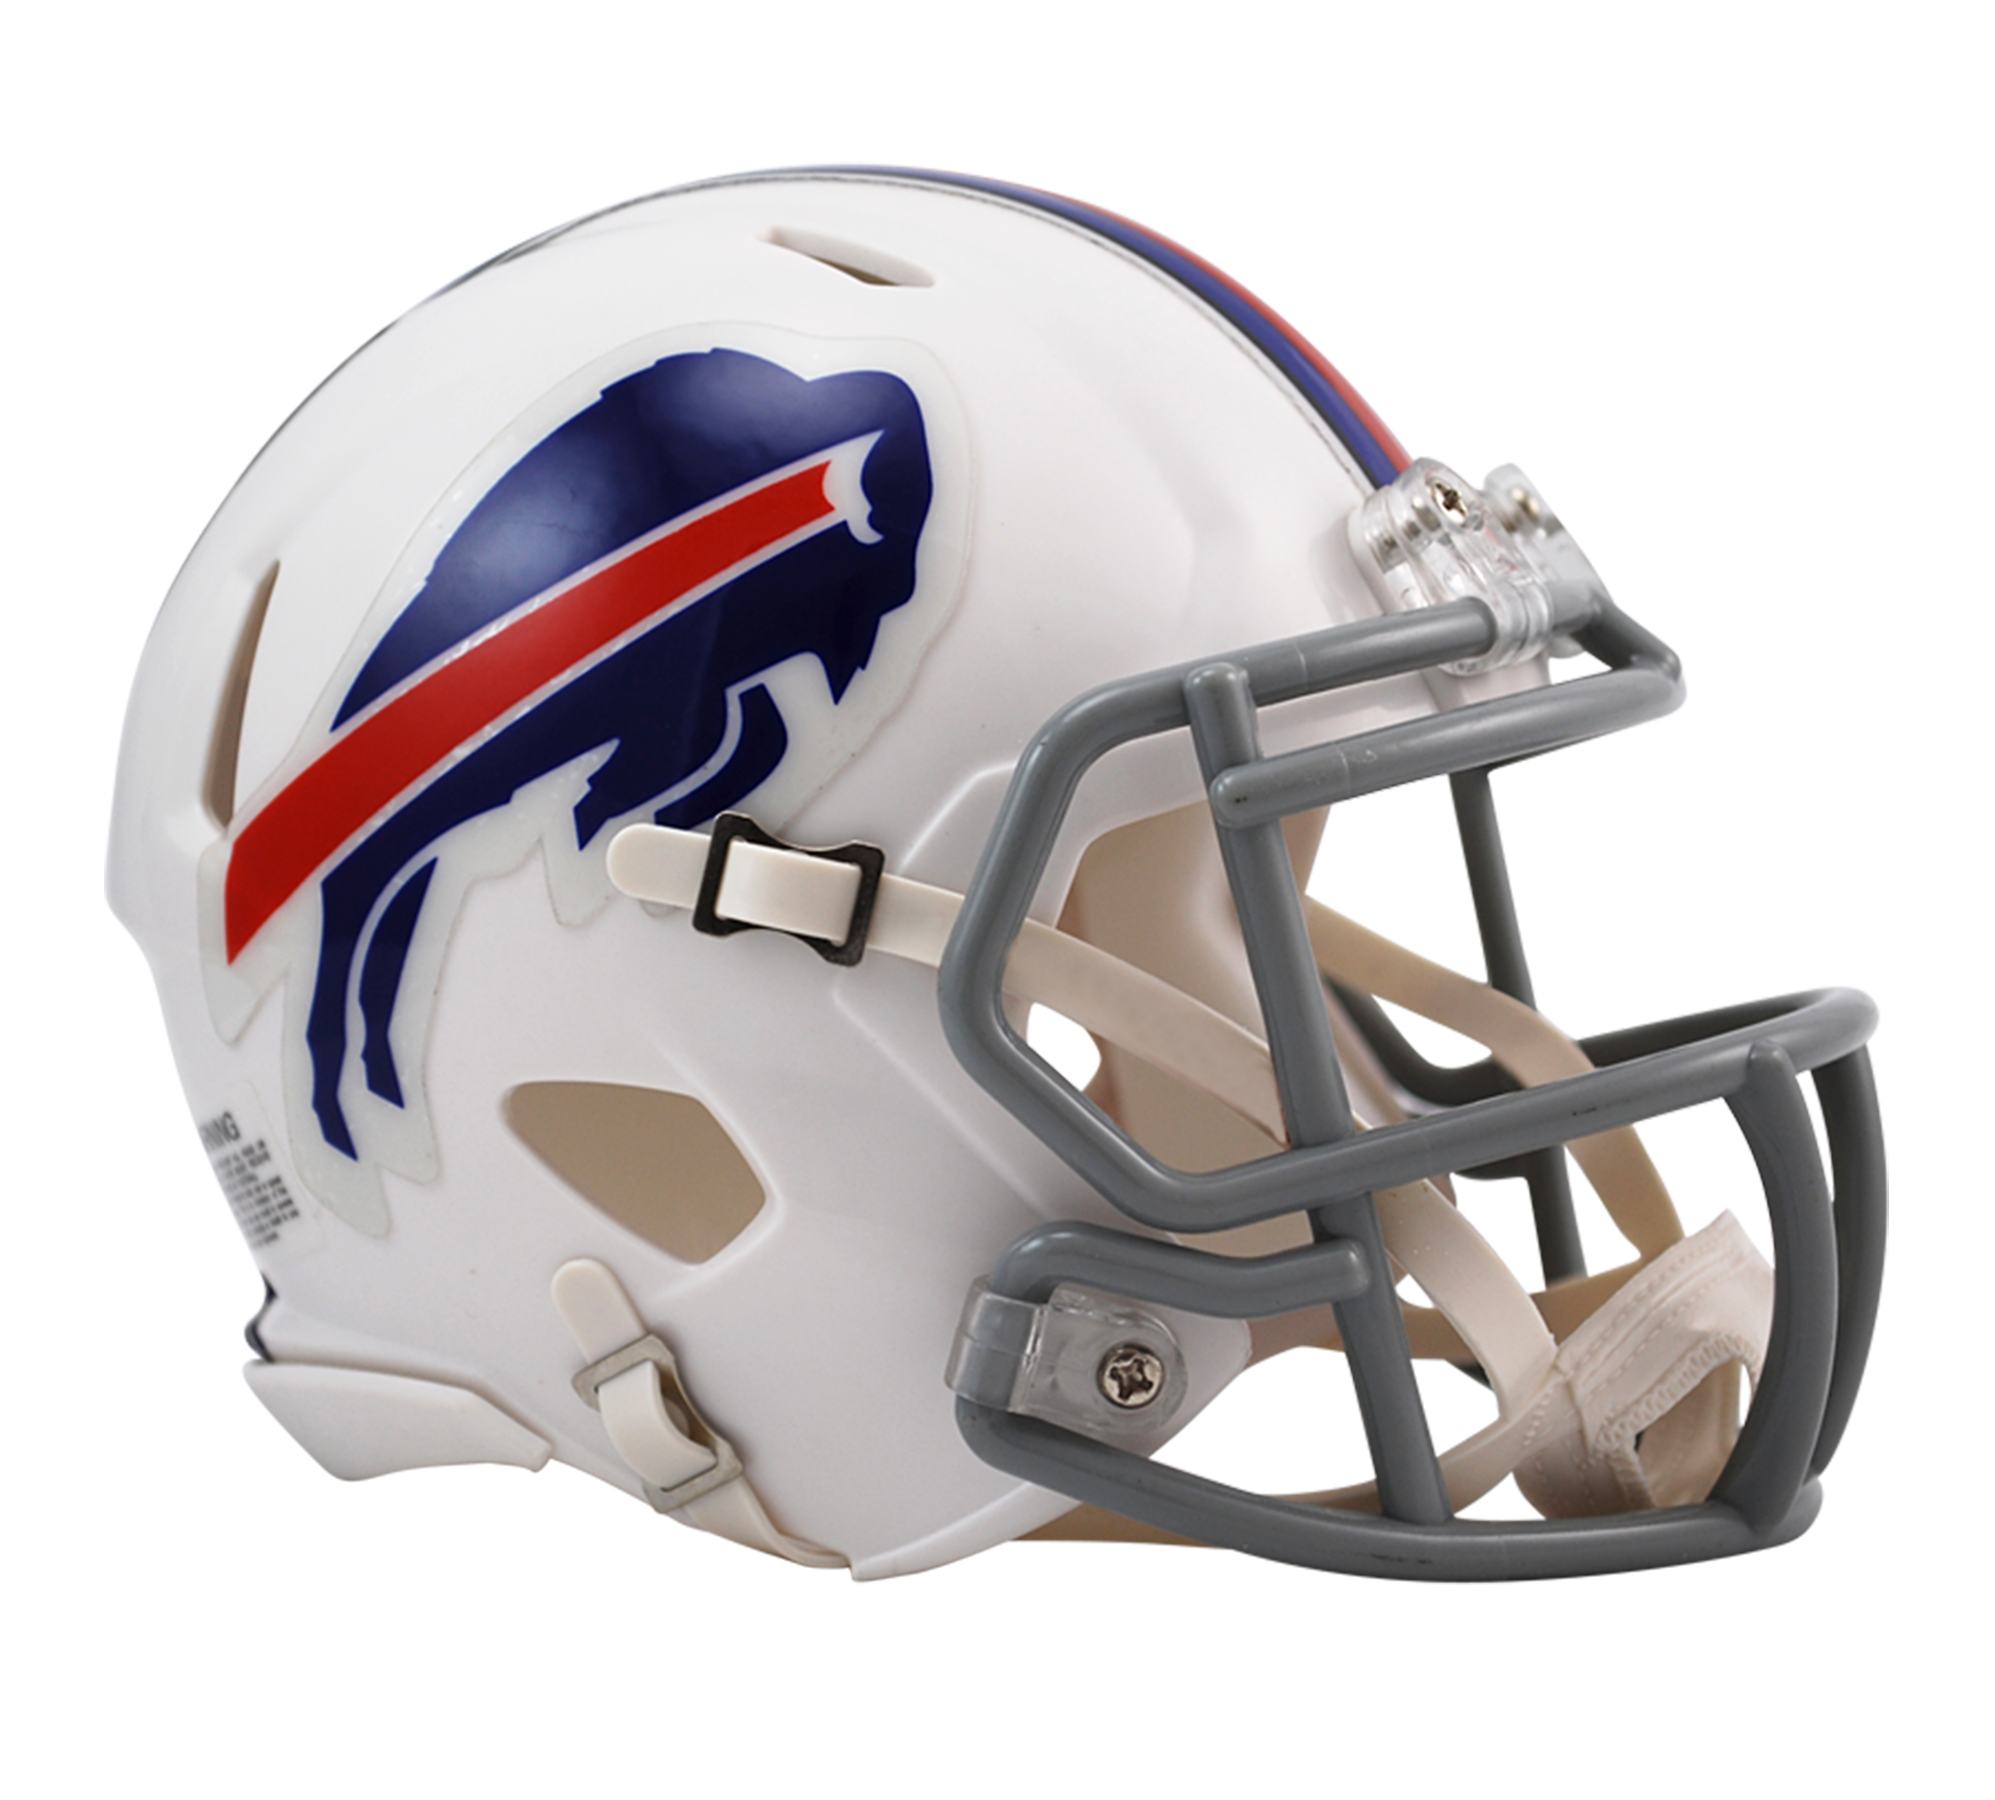 Riddell Buffalo Bills Speed Mini Helmet